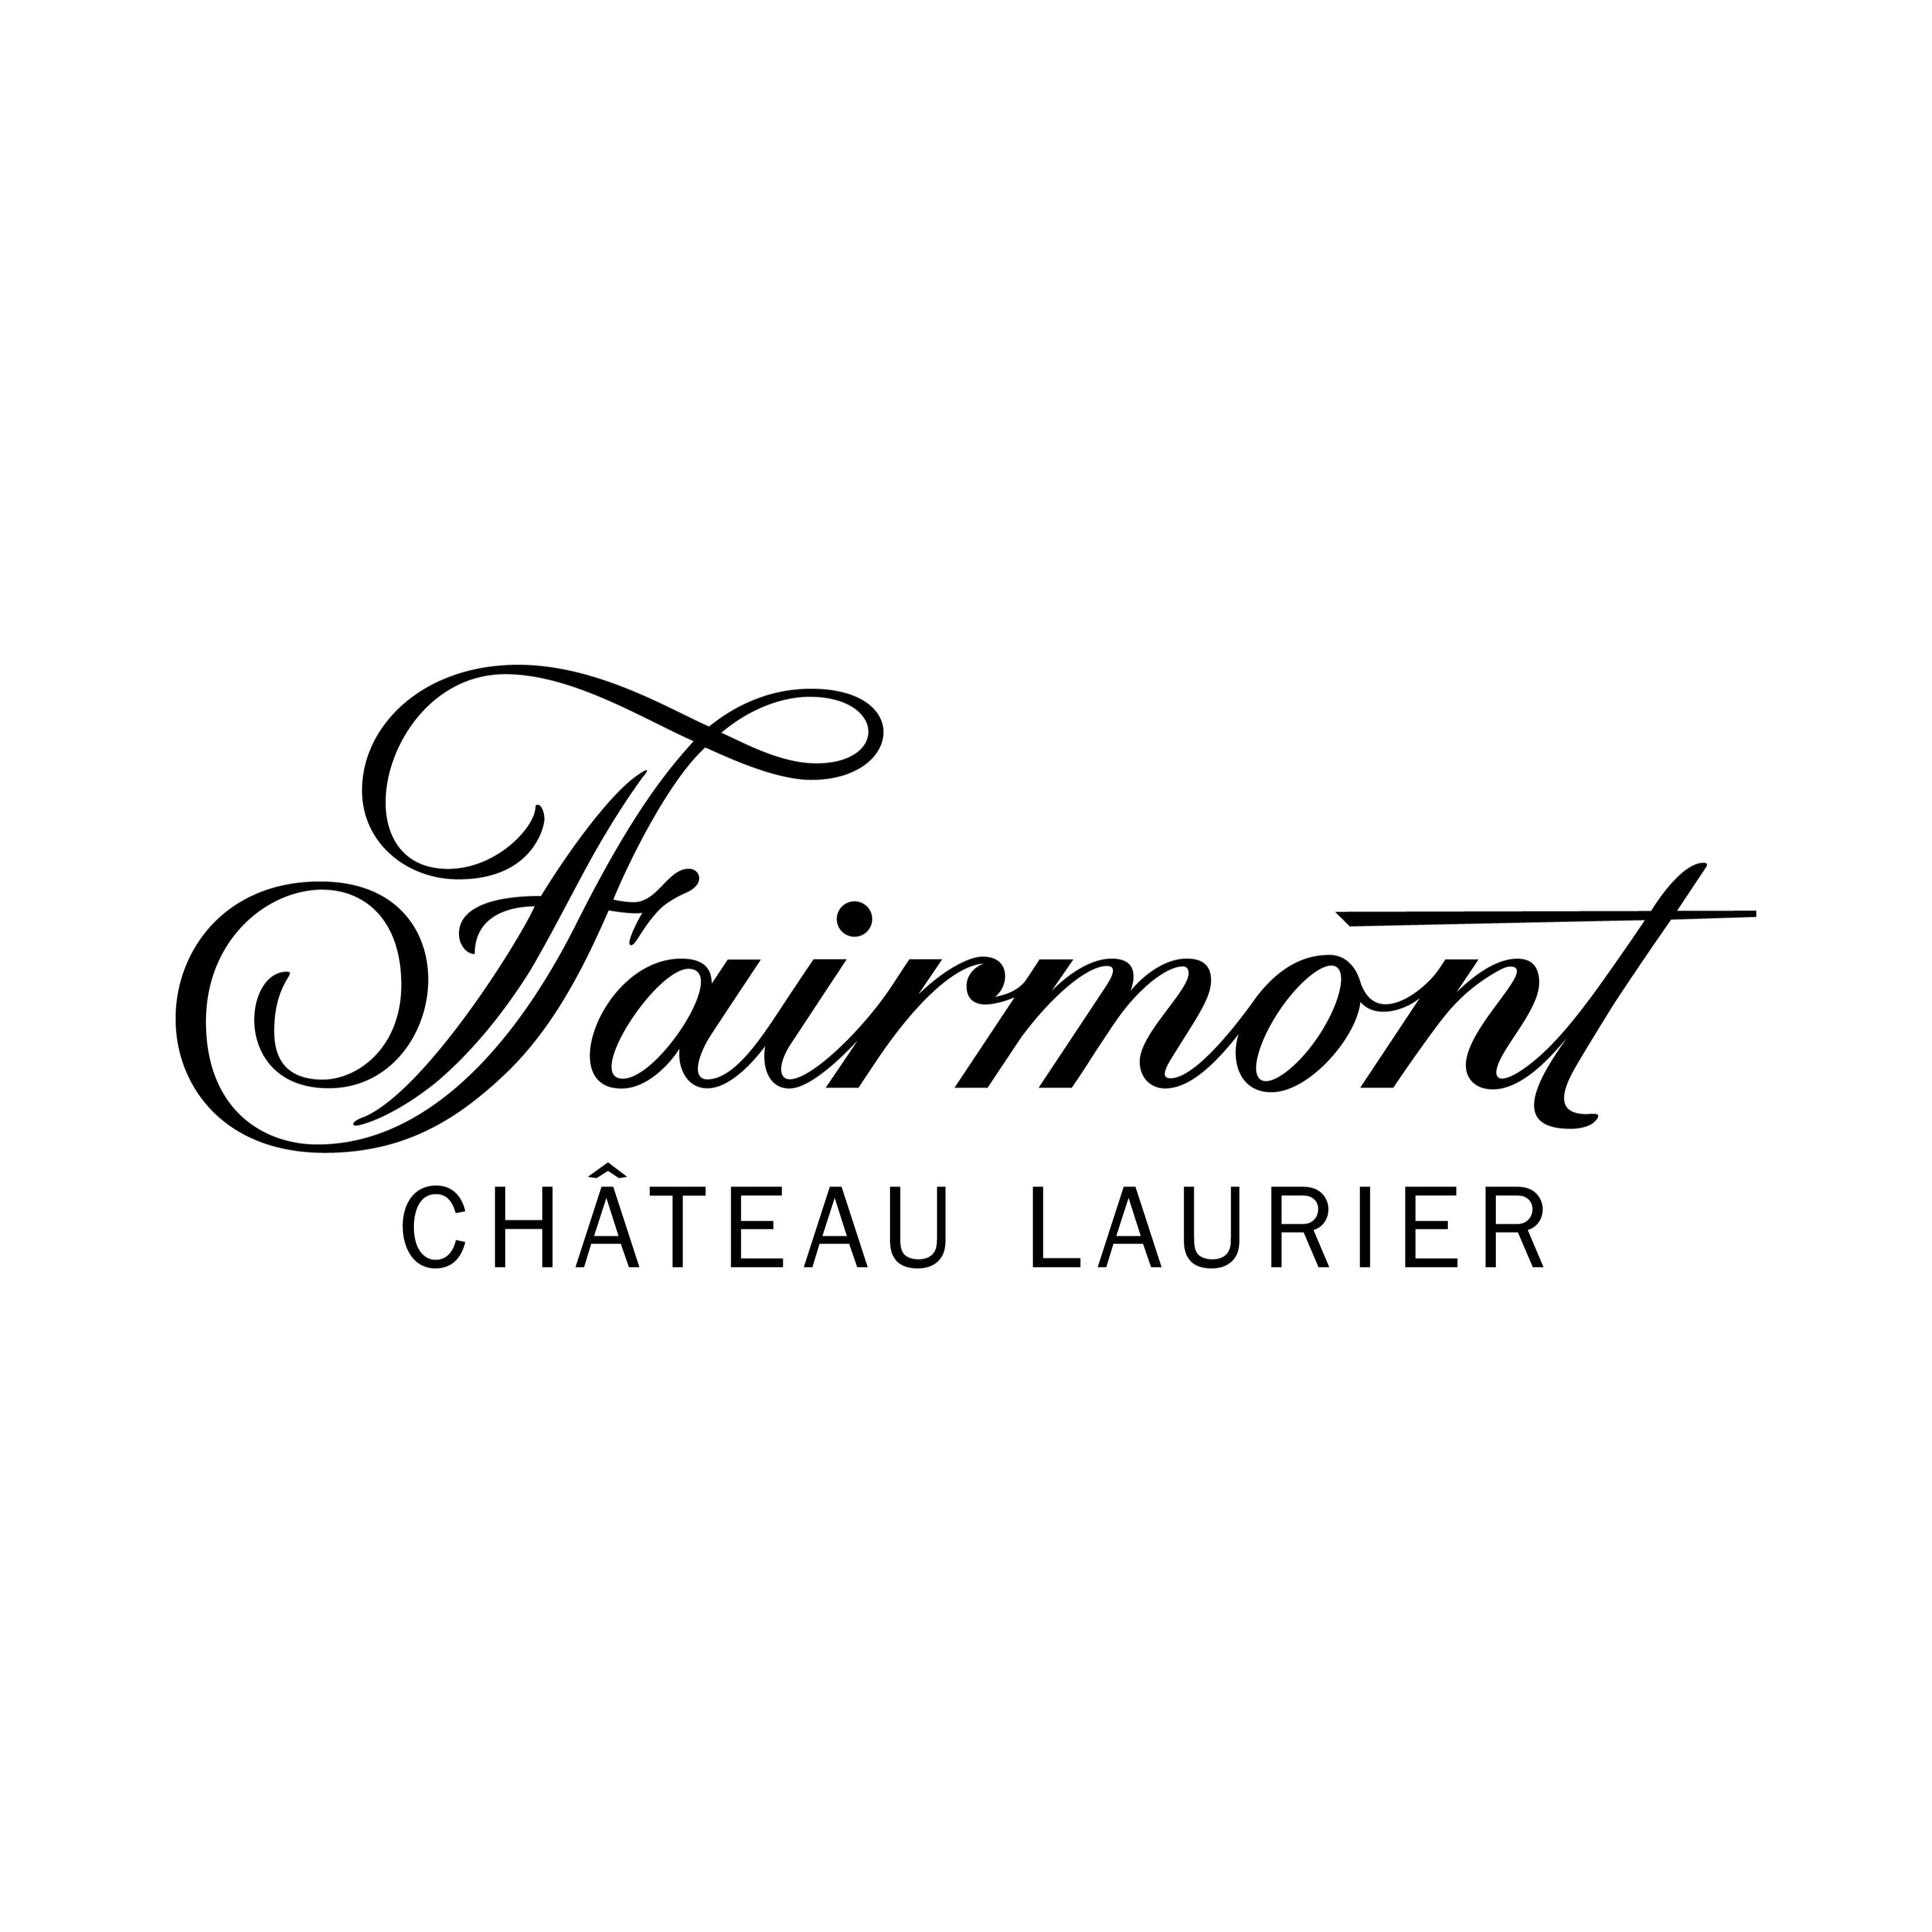 Fairmont Château Laurier